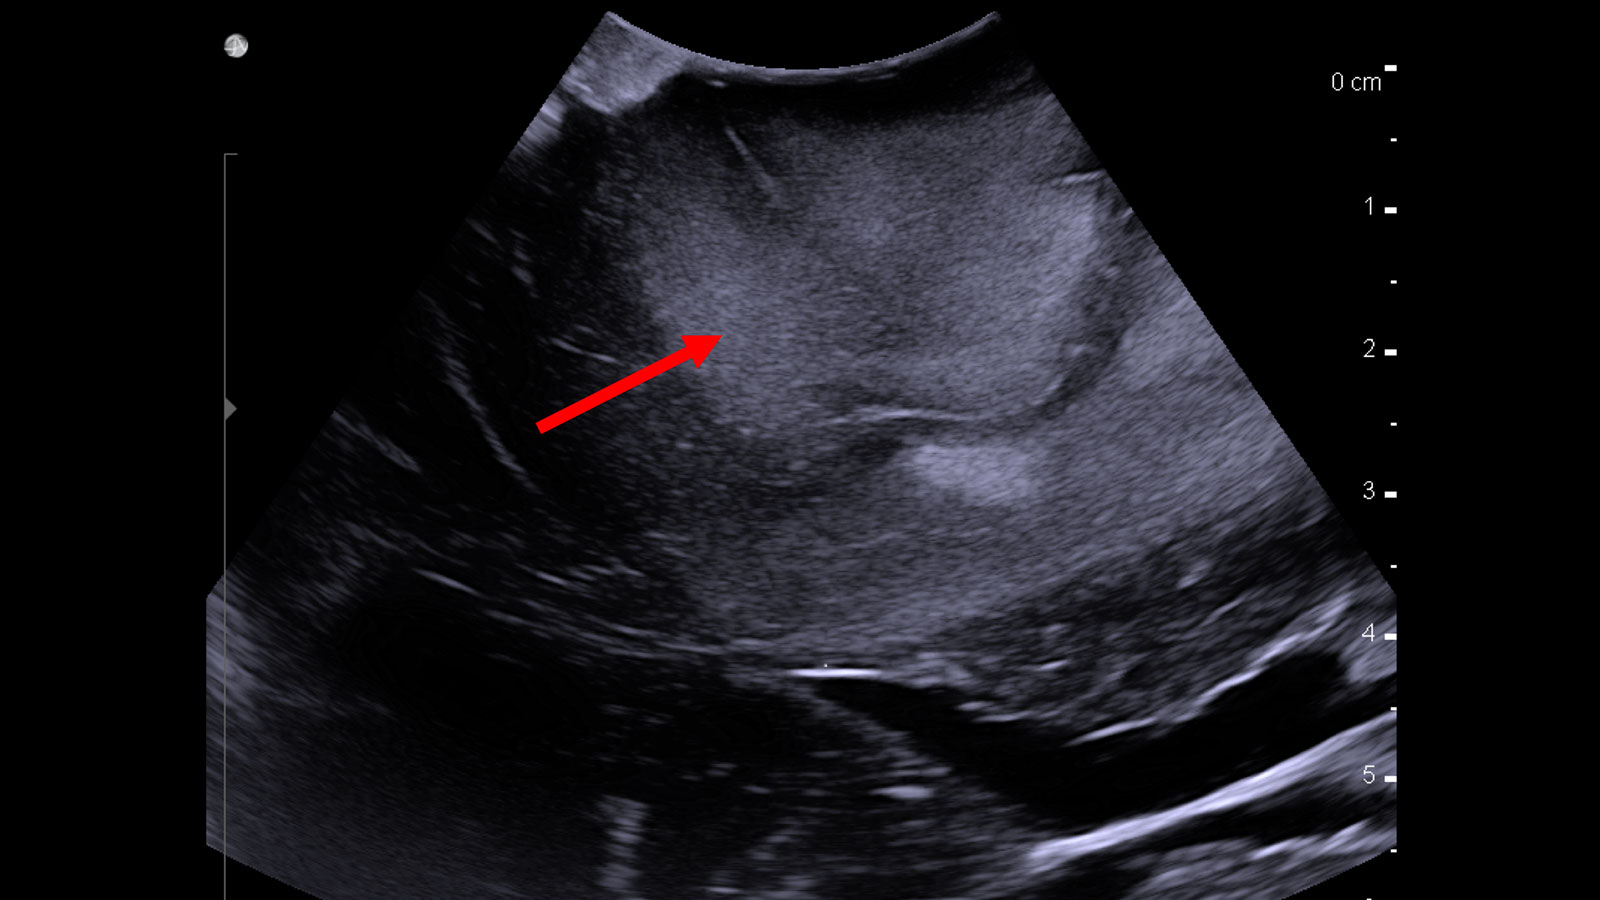 Ultraschallbild zeigt Tumor als helleres Areal in der oberen Bildmitte. Ein roter Pfeil zeigt auf den Tumor.